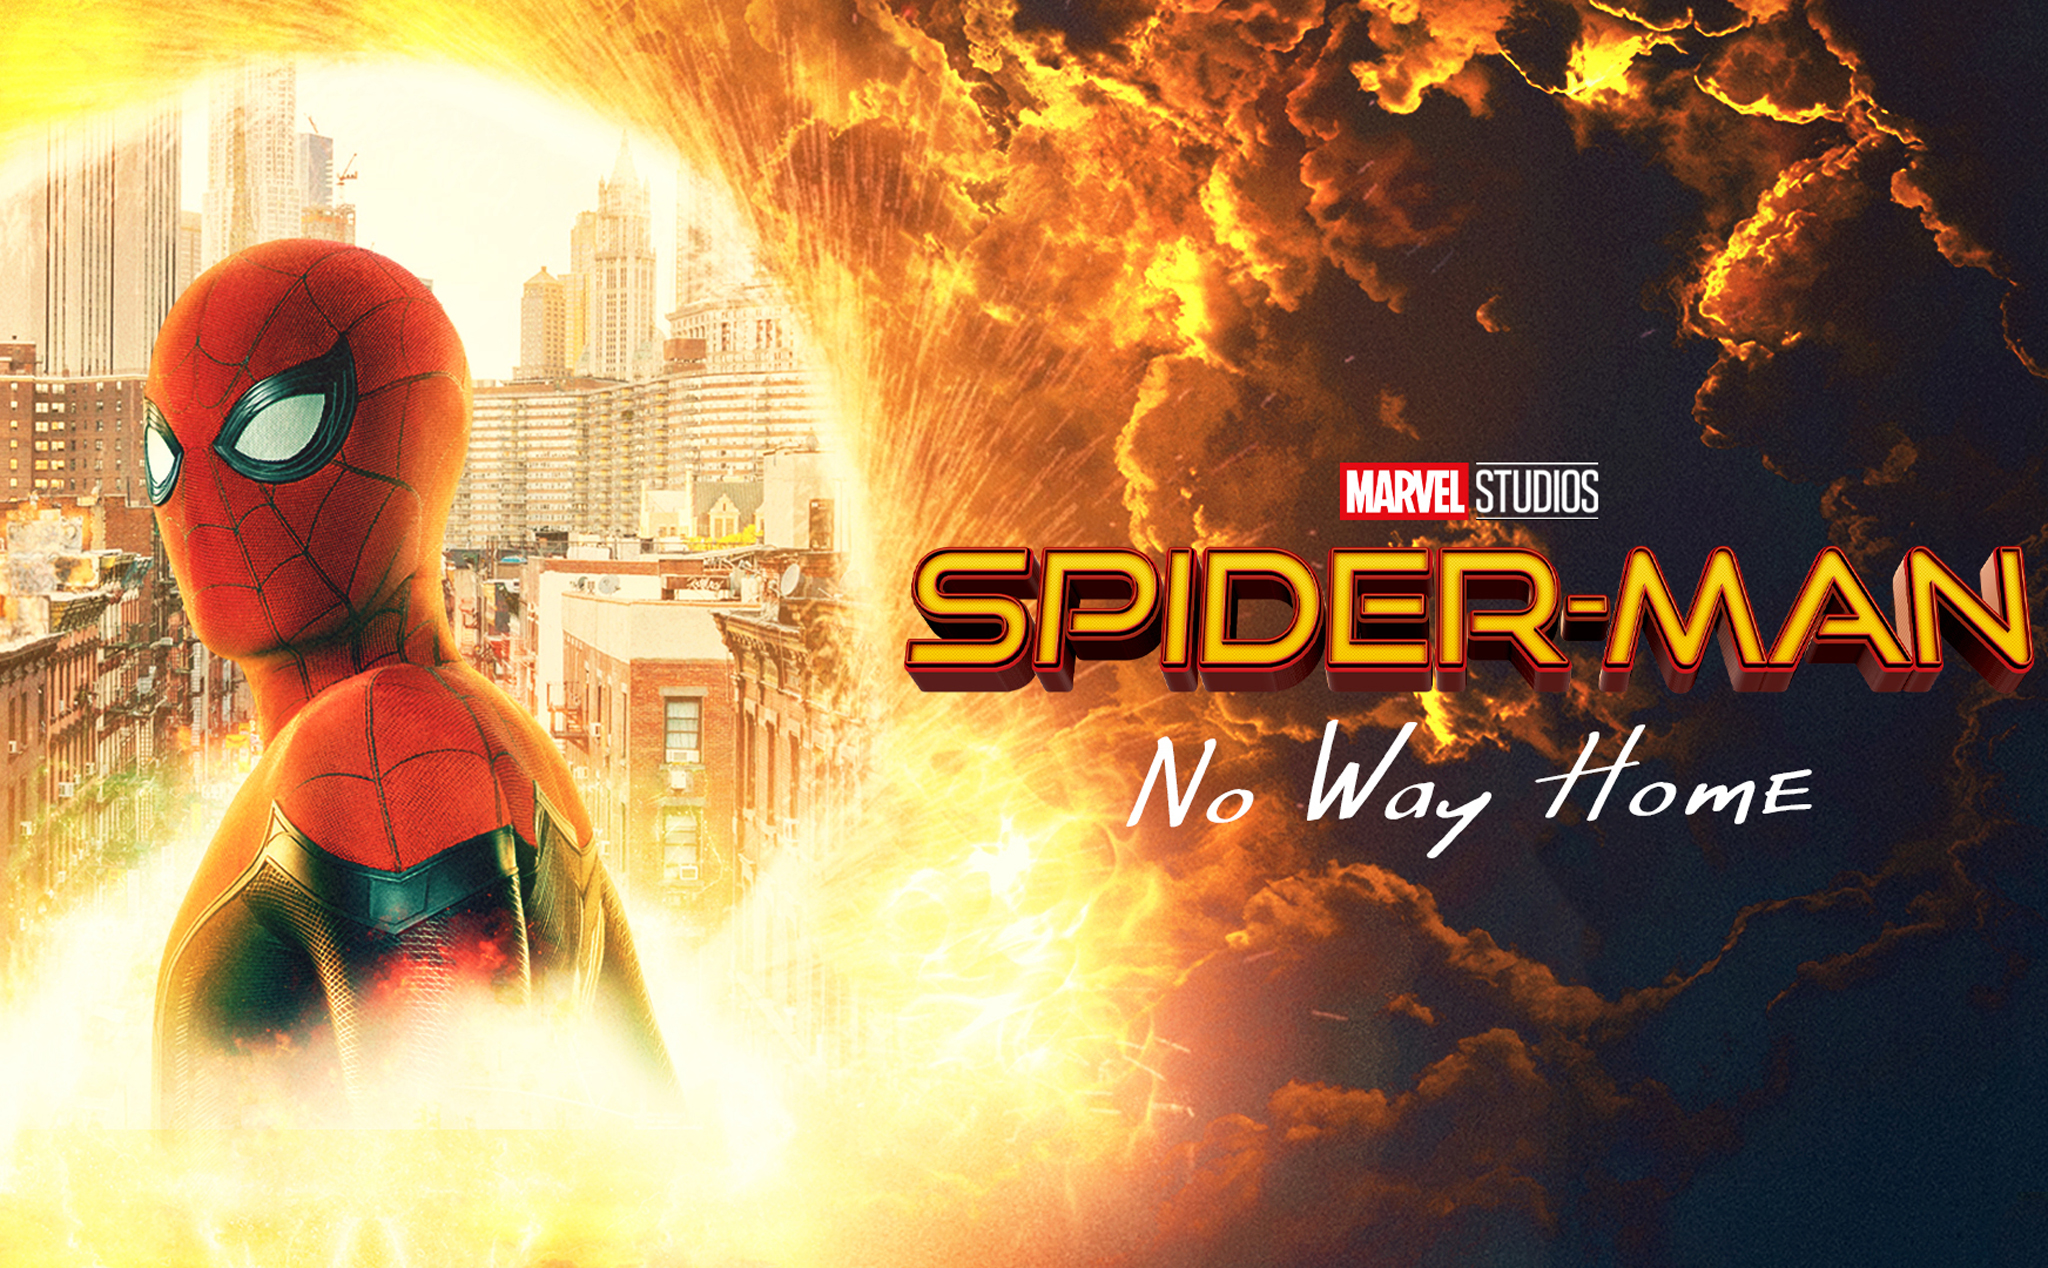 Spider-Man: NWH trở thành phim đầu tiên đạt doanh thu 1 tỷ USD kể từ năm 2019